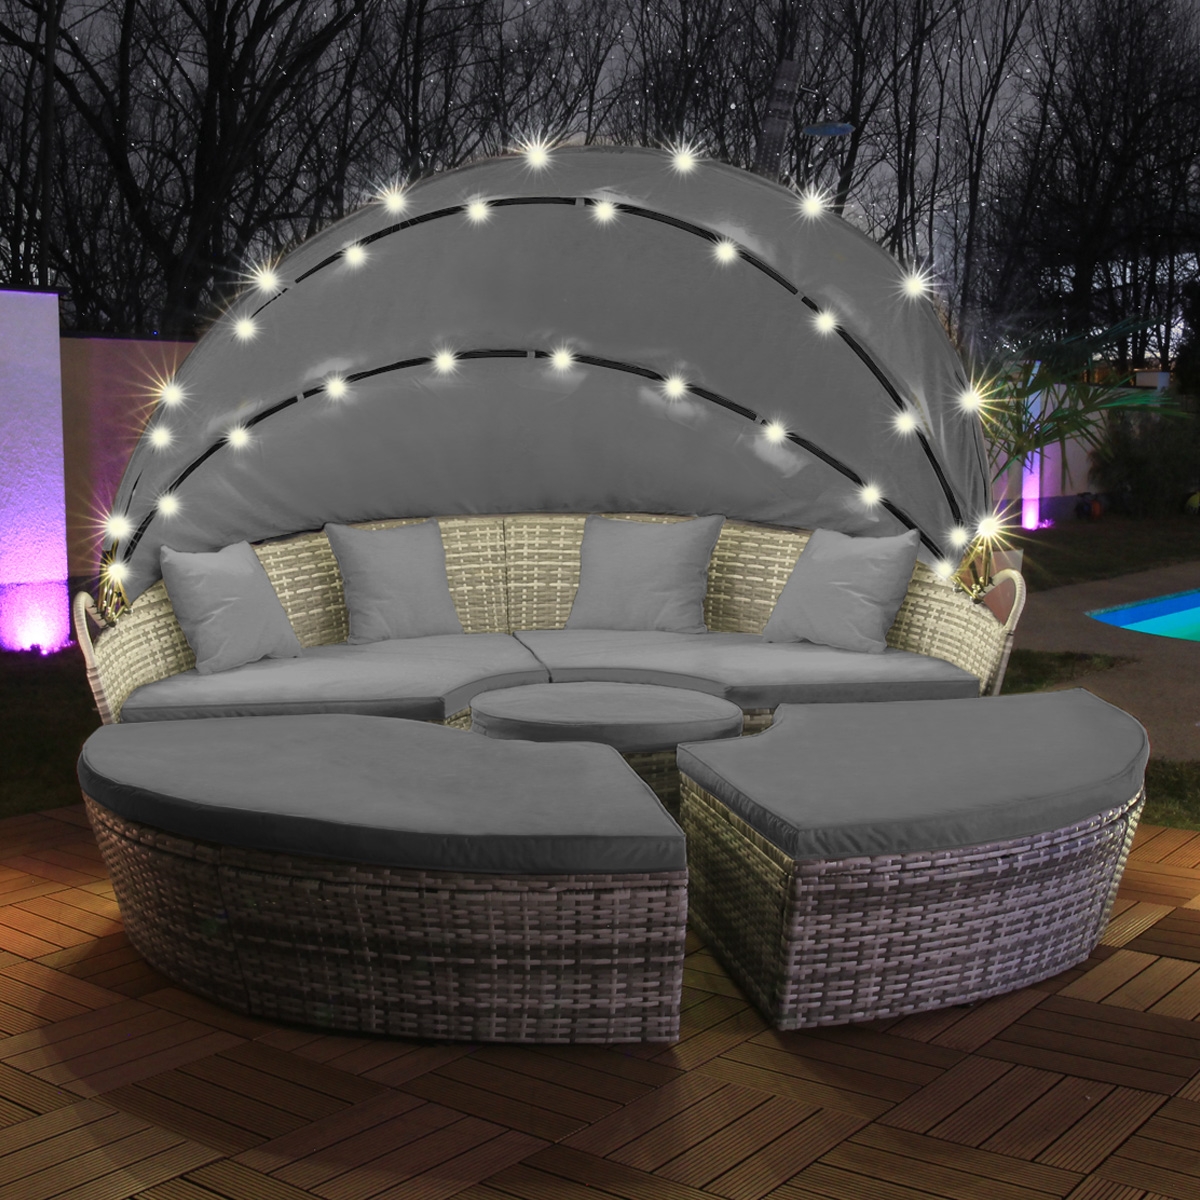 SWING & HARMONIE LED - Garten 180cm Sonneninsel Lounge, Grau